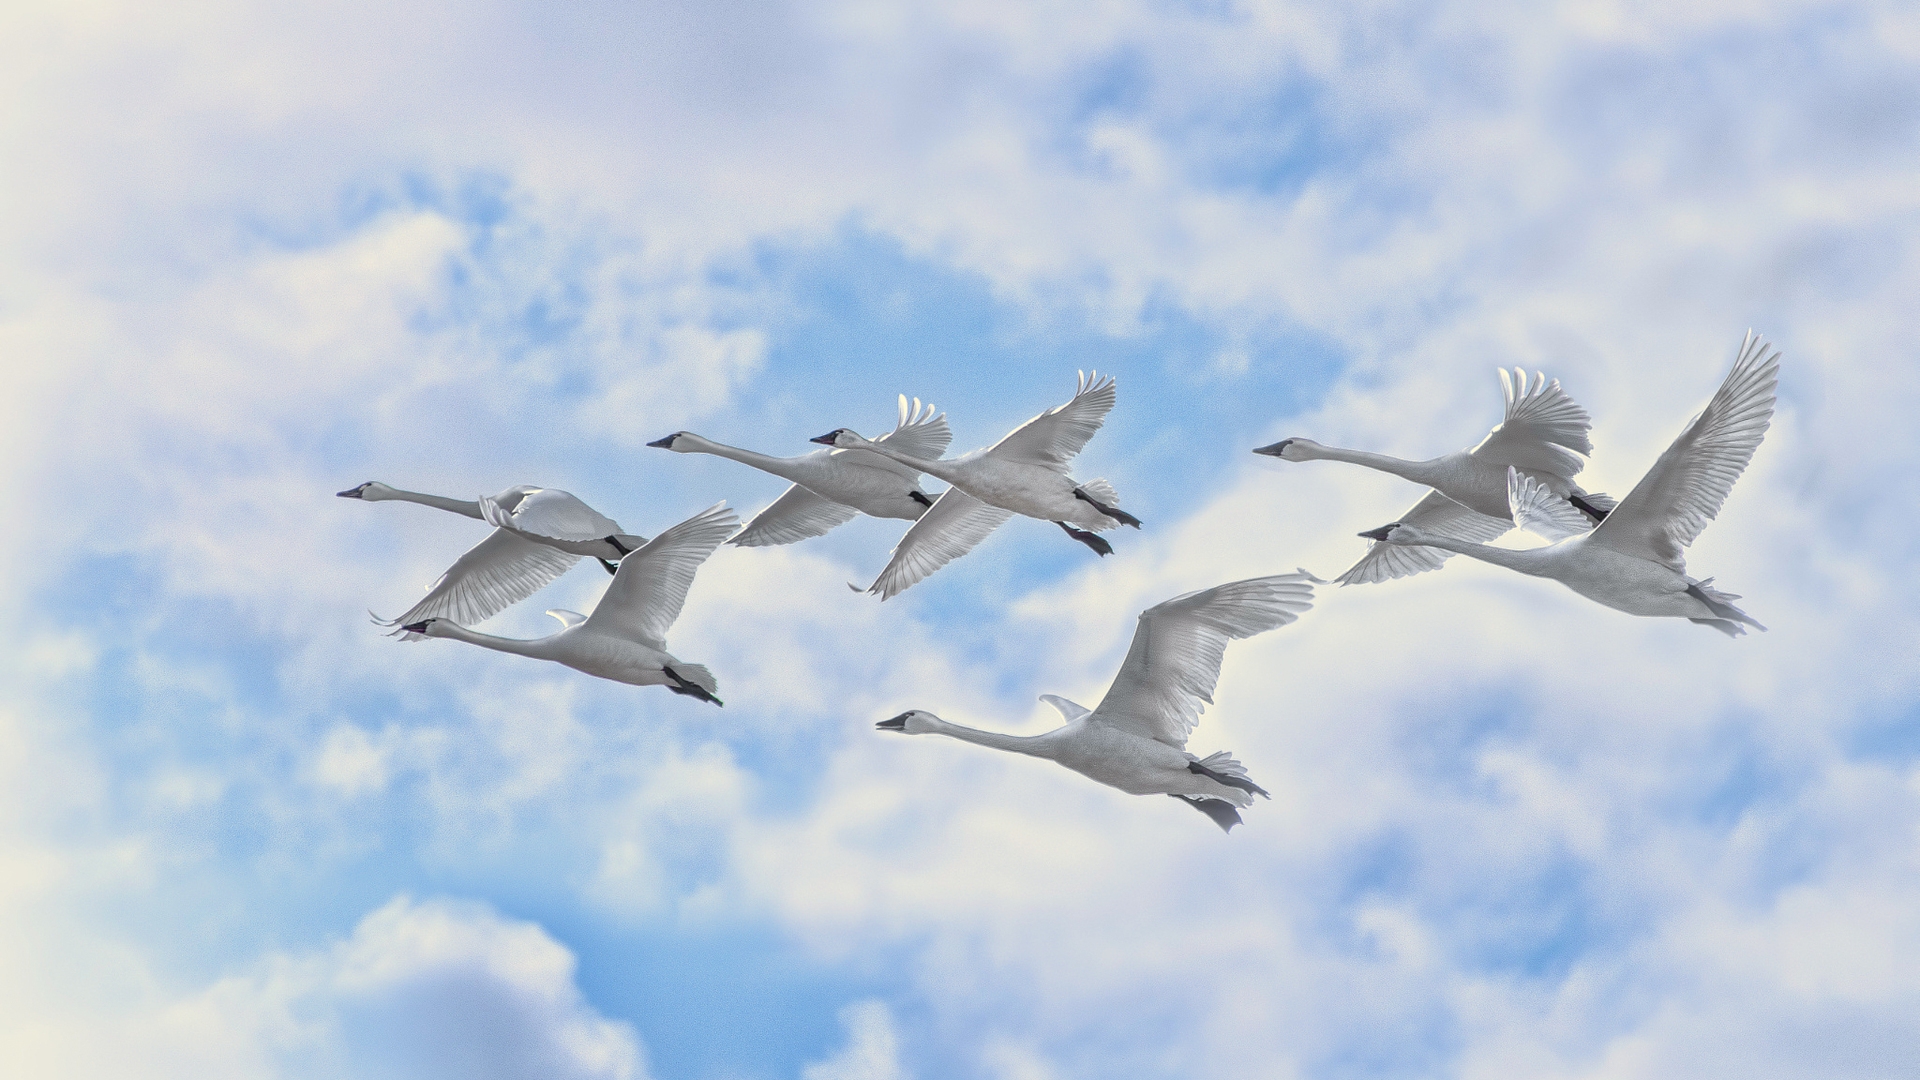 White Swans Flying for 1920 x 1080 HDTV 1080p resolution